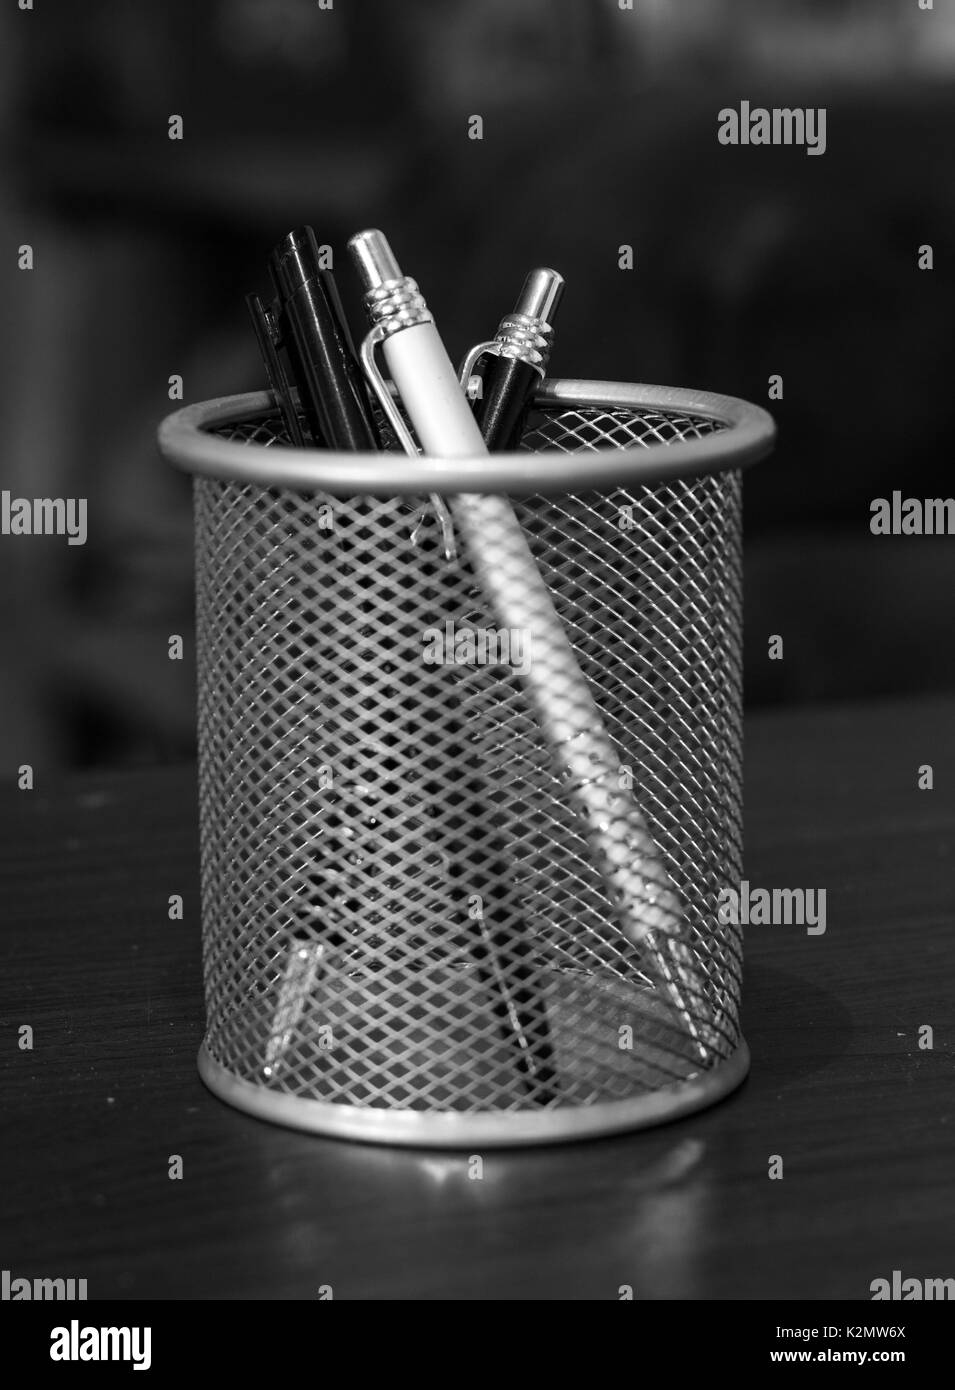 Drei elegante Stifte in einem Korb auf einem Tisch in Schwarz und Weiß. Stockfoto